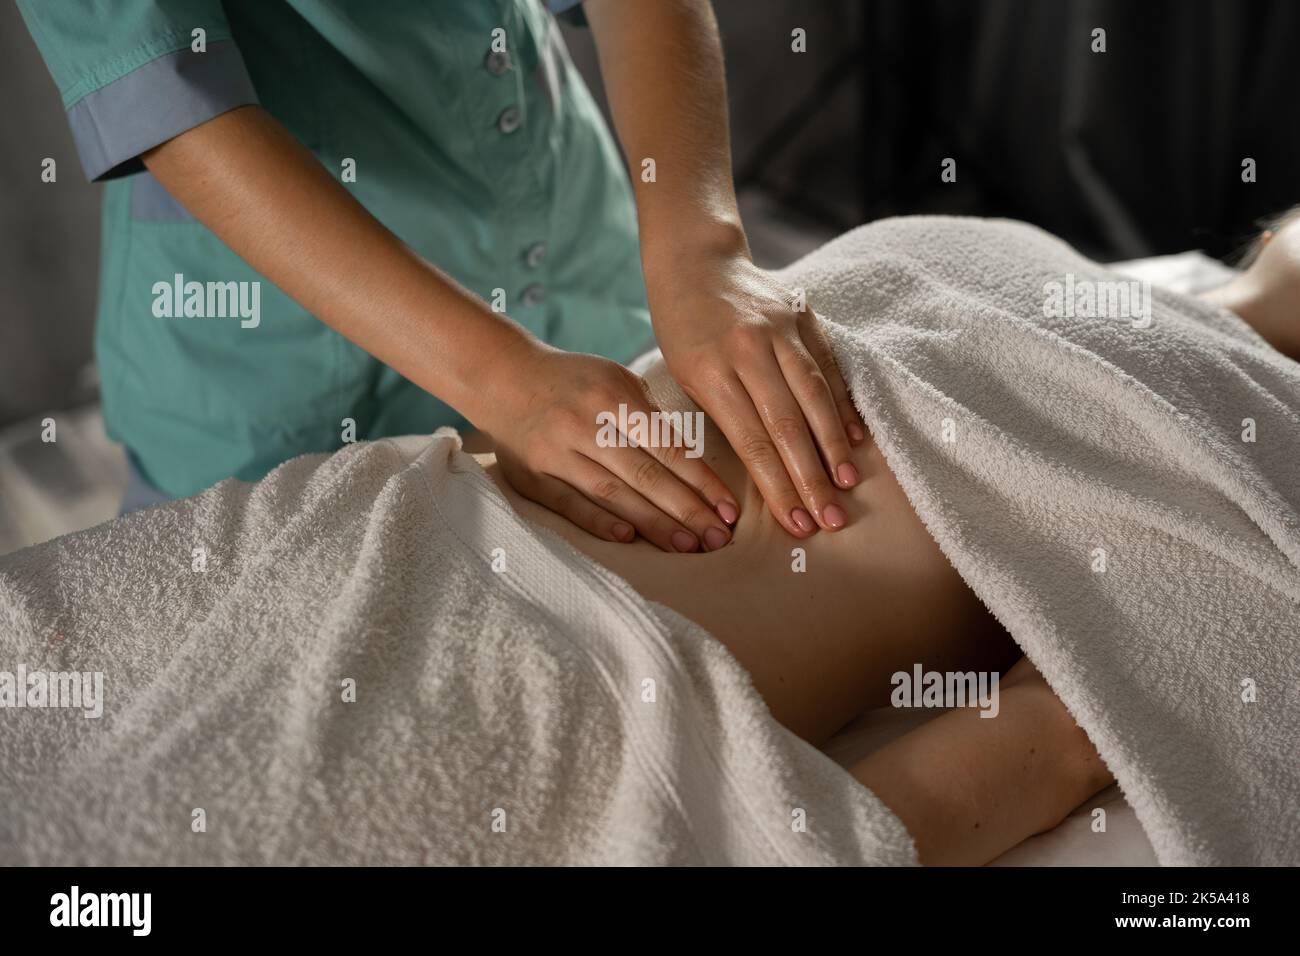 Nahaufnahme der Hände, die den weiblichen Bauch massieren. Therapeut übt Druck auf den Bauch aus. Körperformende Massage, Lymphdrainage, manuelle Eingriffe. Frau Stockfoto